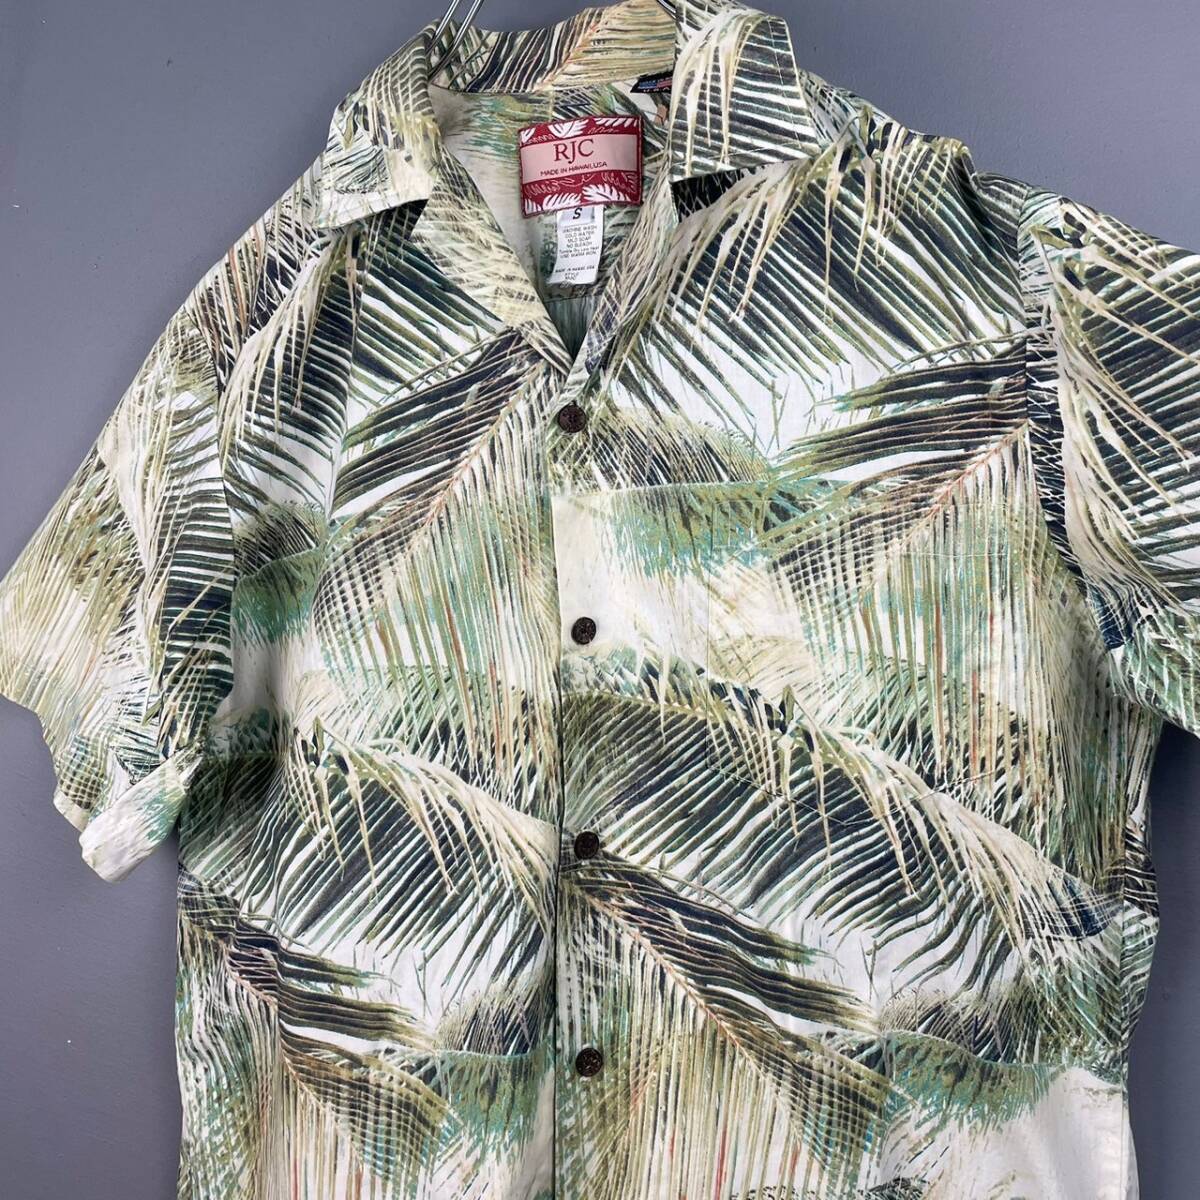 Wm697 Гаваи производства RJC Robert *J * Clancy короткий рукав гавайская рубашка Hawaiian открытый цвет . воротник общий рисунок мужской свободно 